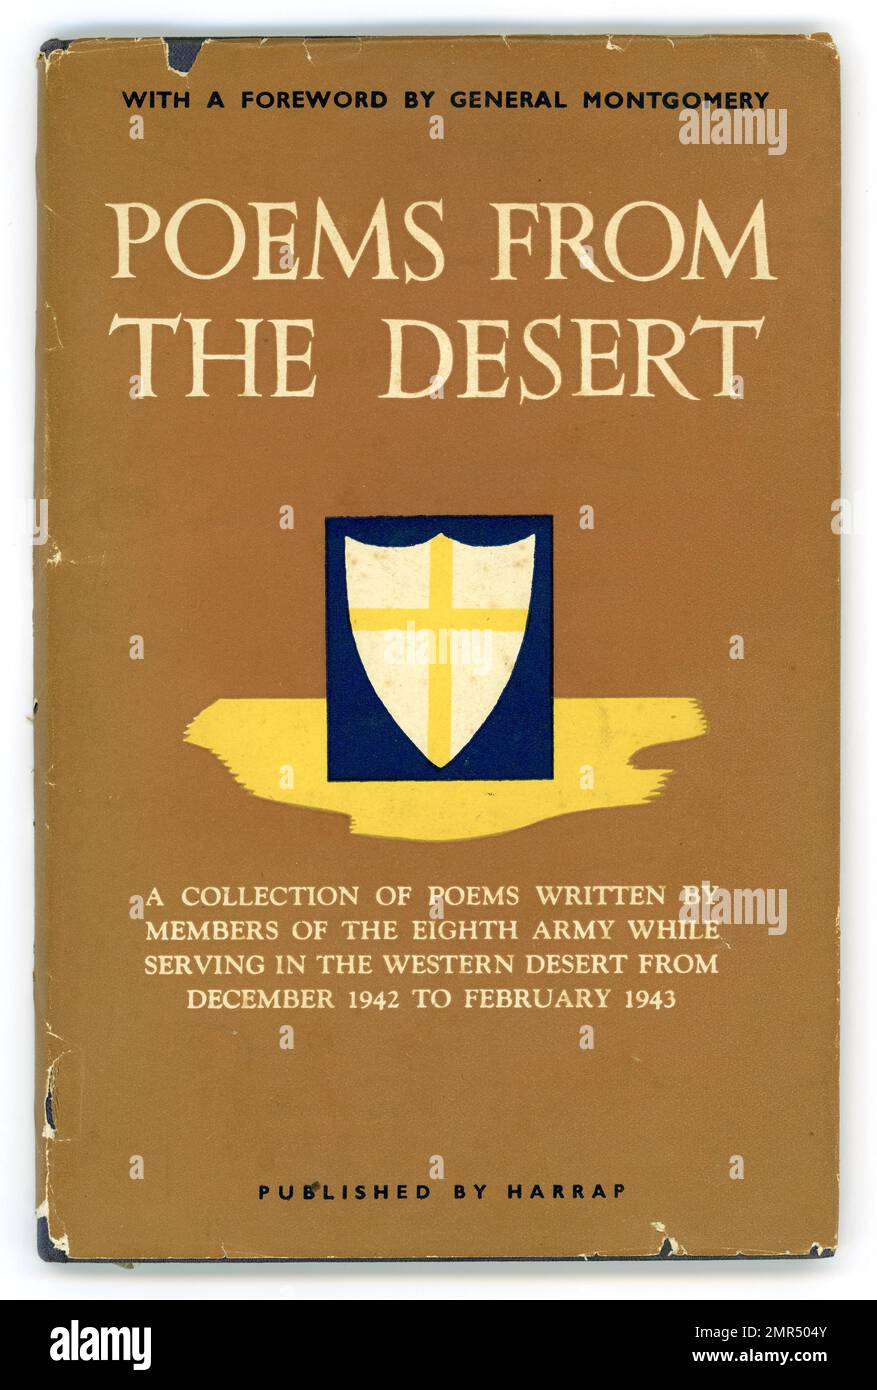 Copertina originale del libro intitolata Poems from the Desert - versetti dei membri dell'esercito del 8th, 1st edizione 1944, in avanti dal generale Montgomery Foto Stock